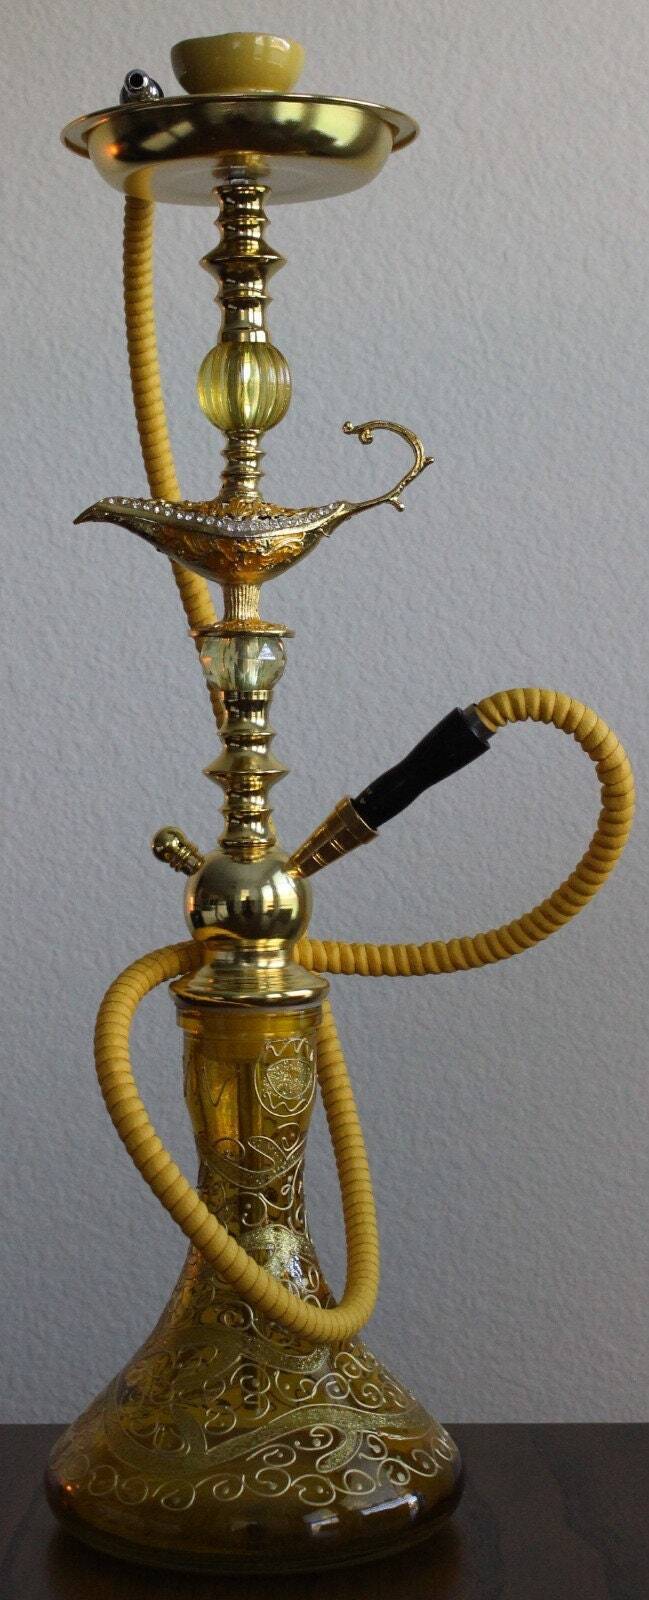 Hookah - Genie's Lamp Design - Arabian Style